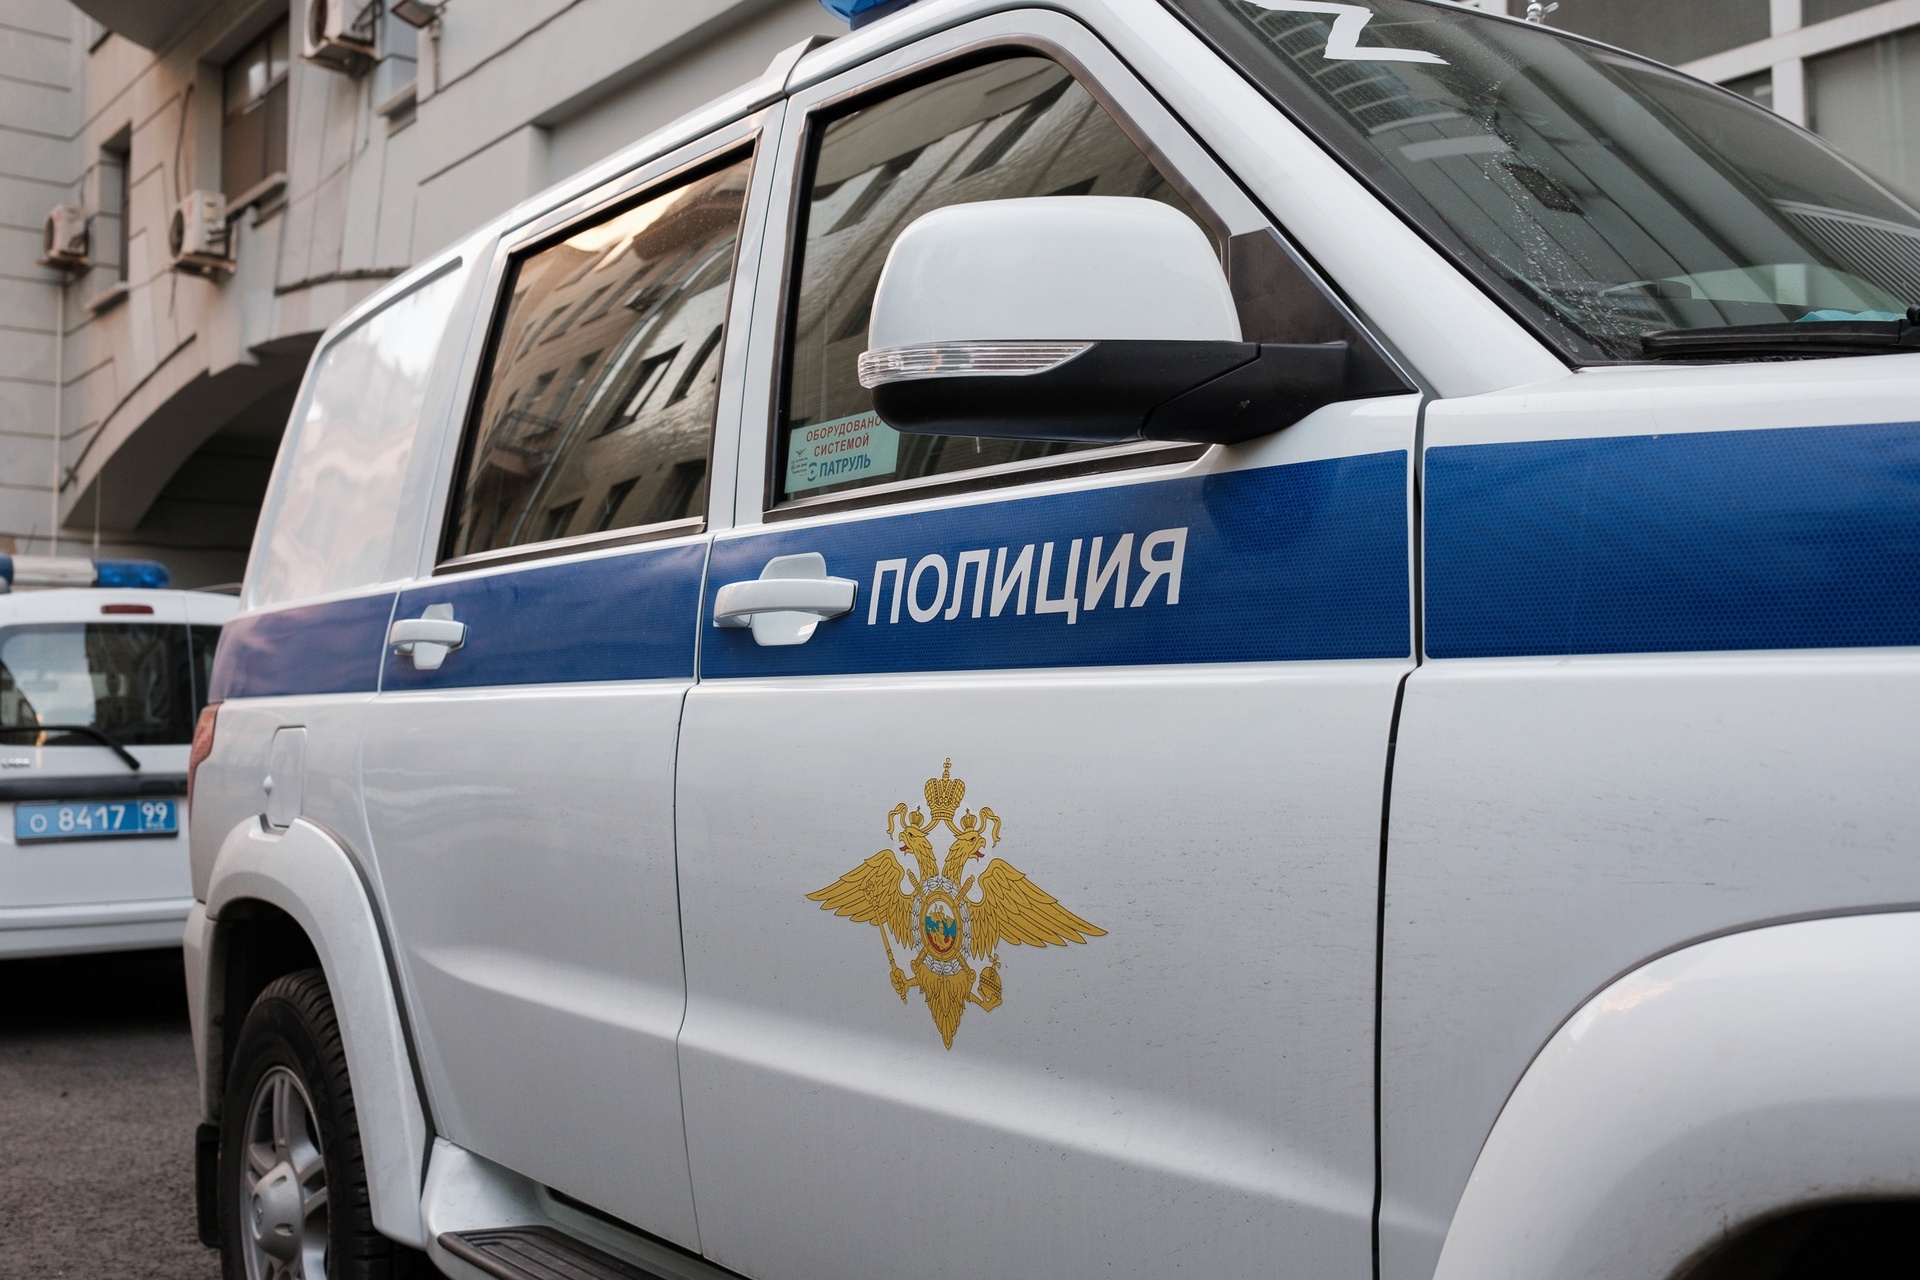 Конфликт со стрельбой произошел у кафе в центре Москвы